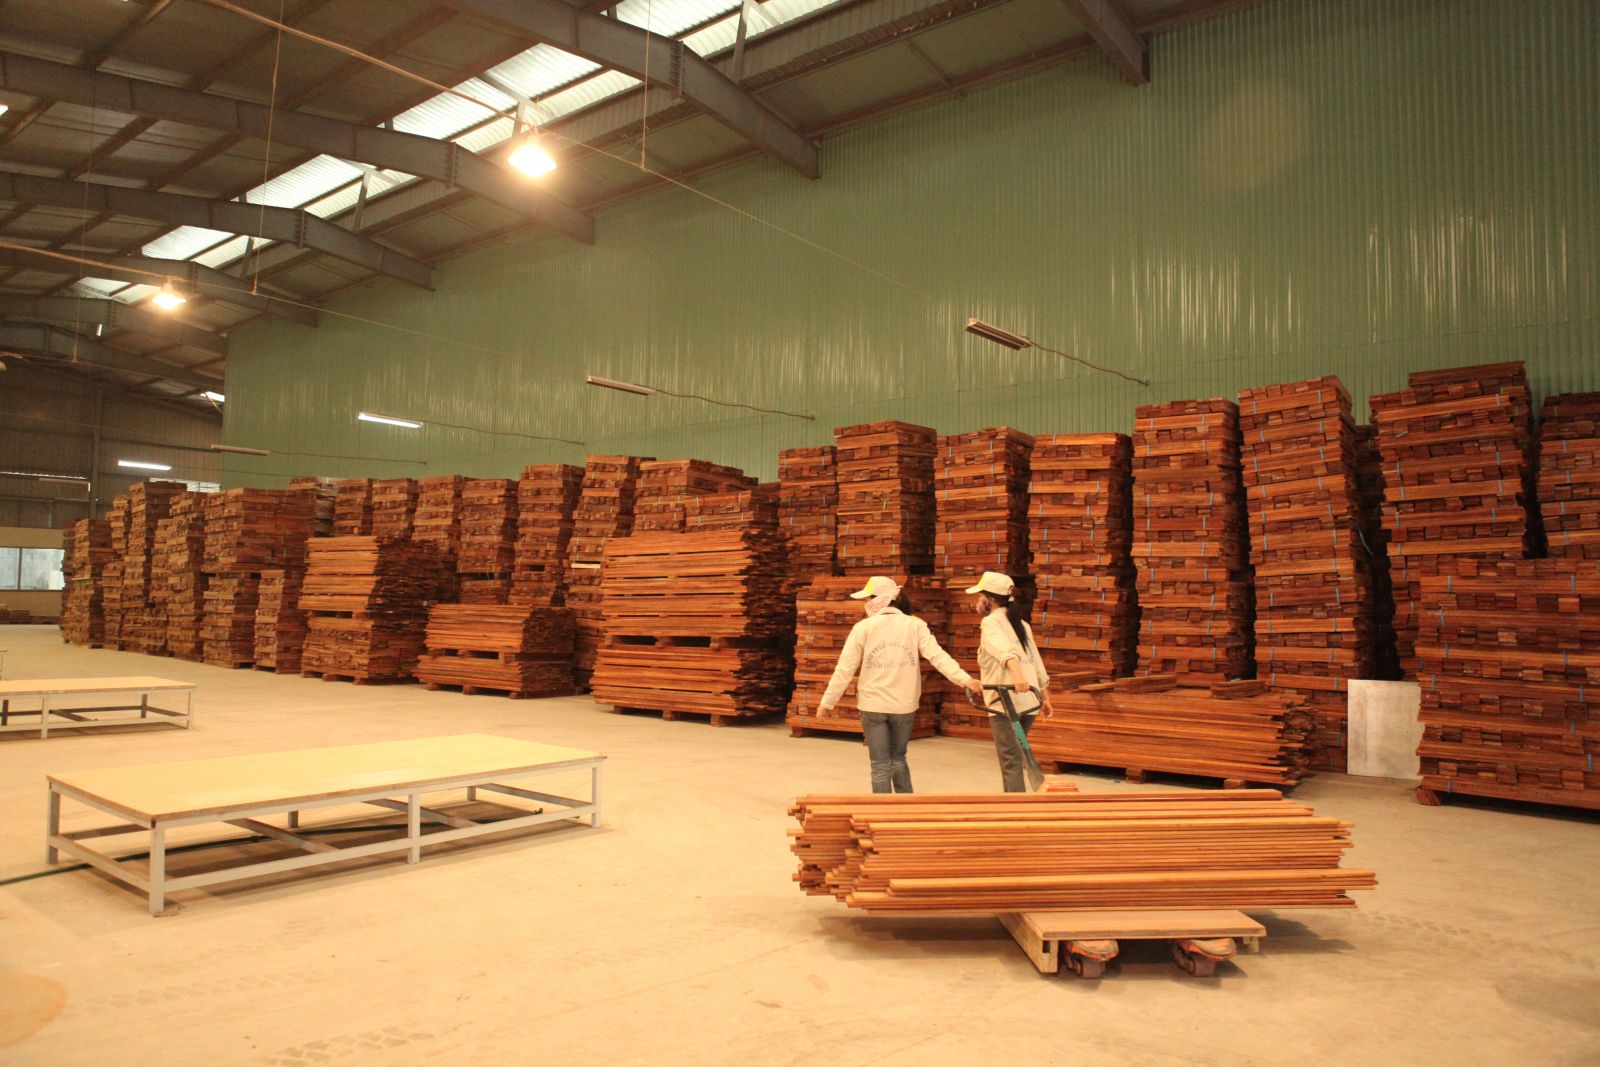 Sàn gỗ lim Nam Phi 15x90x900mm